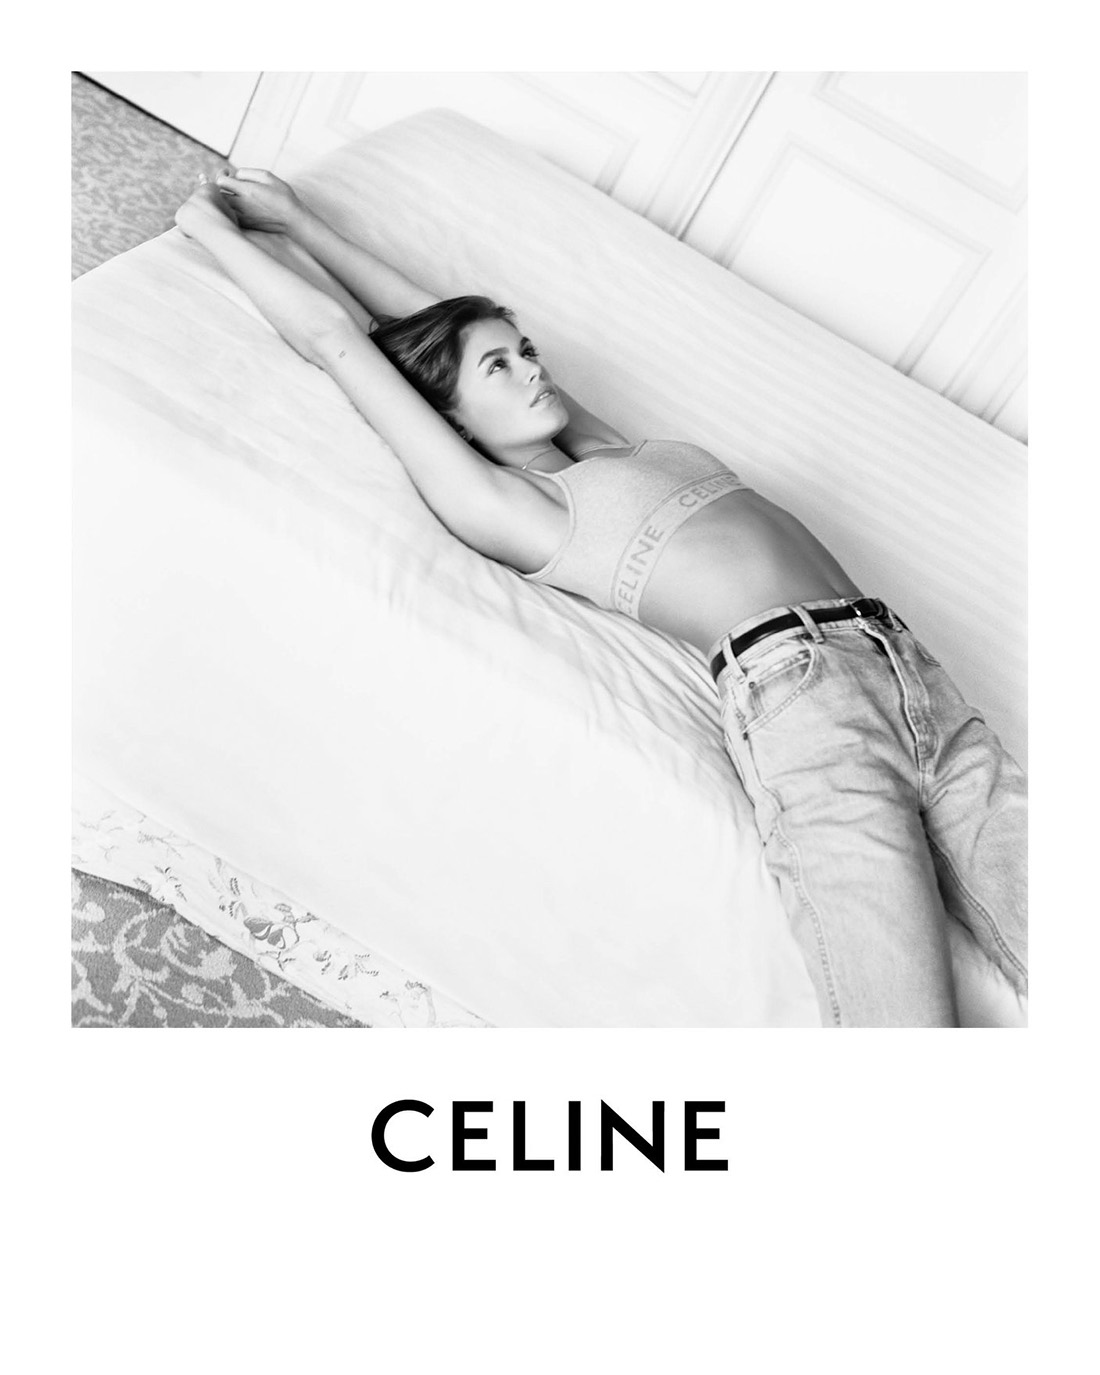 Celine Spring Summer 2021 Campaign